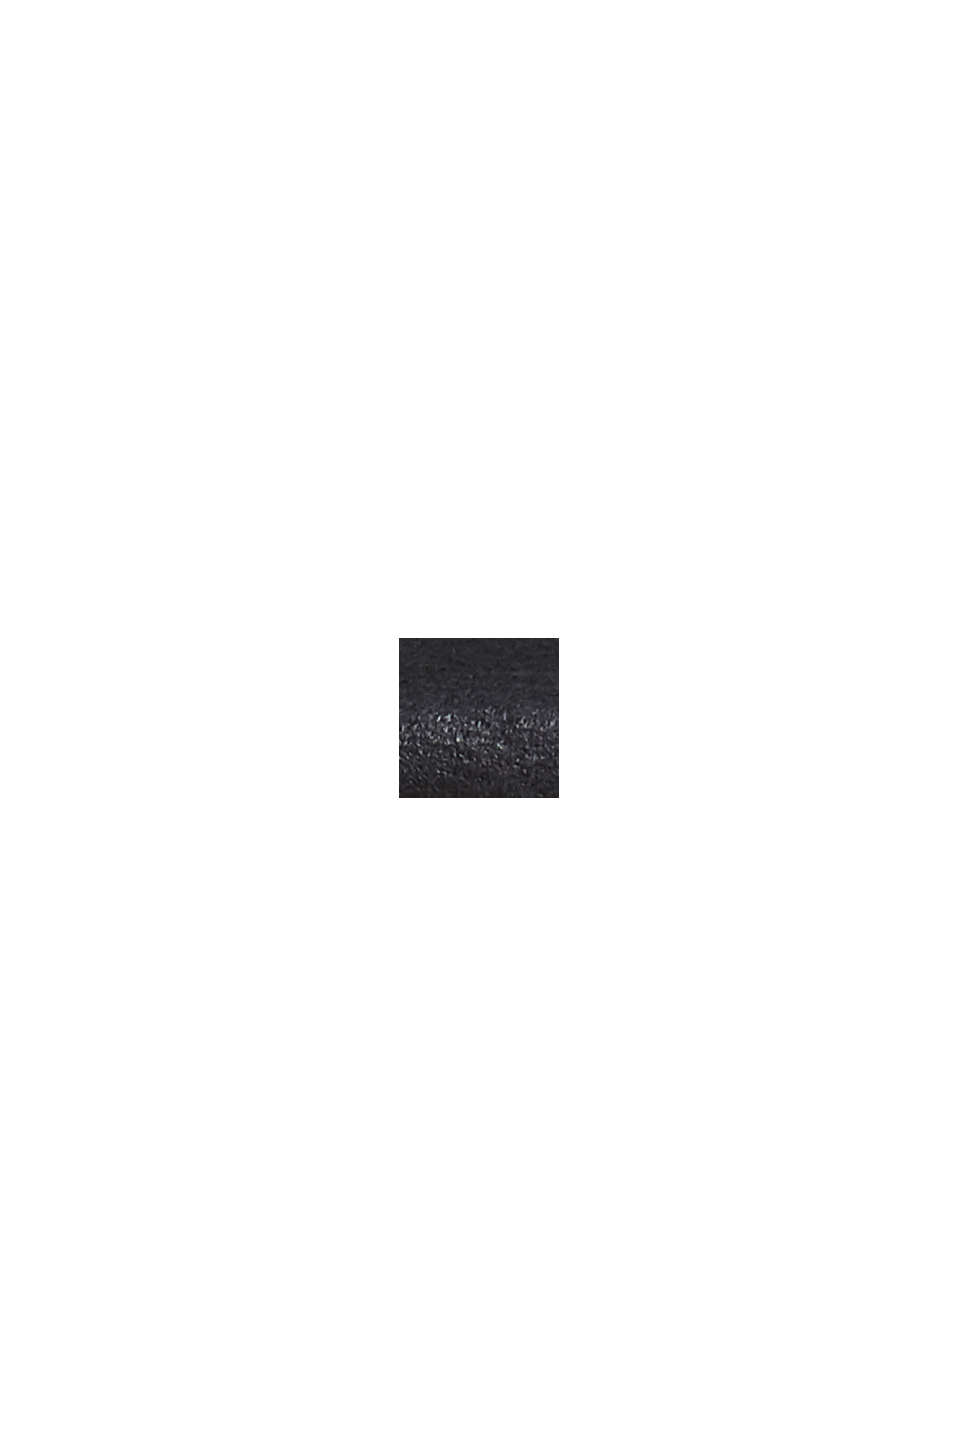 Chronograf z nerezové oceli, s koženým náramkem, BLACK, swatch